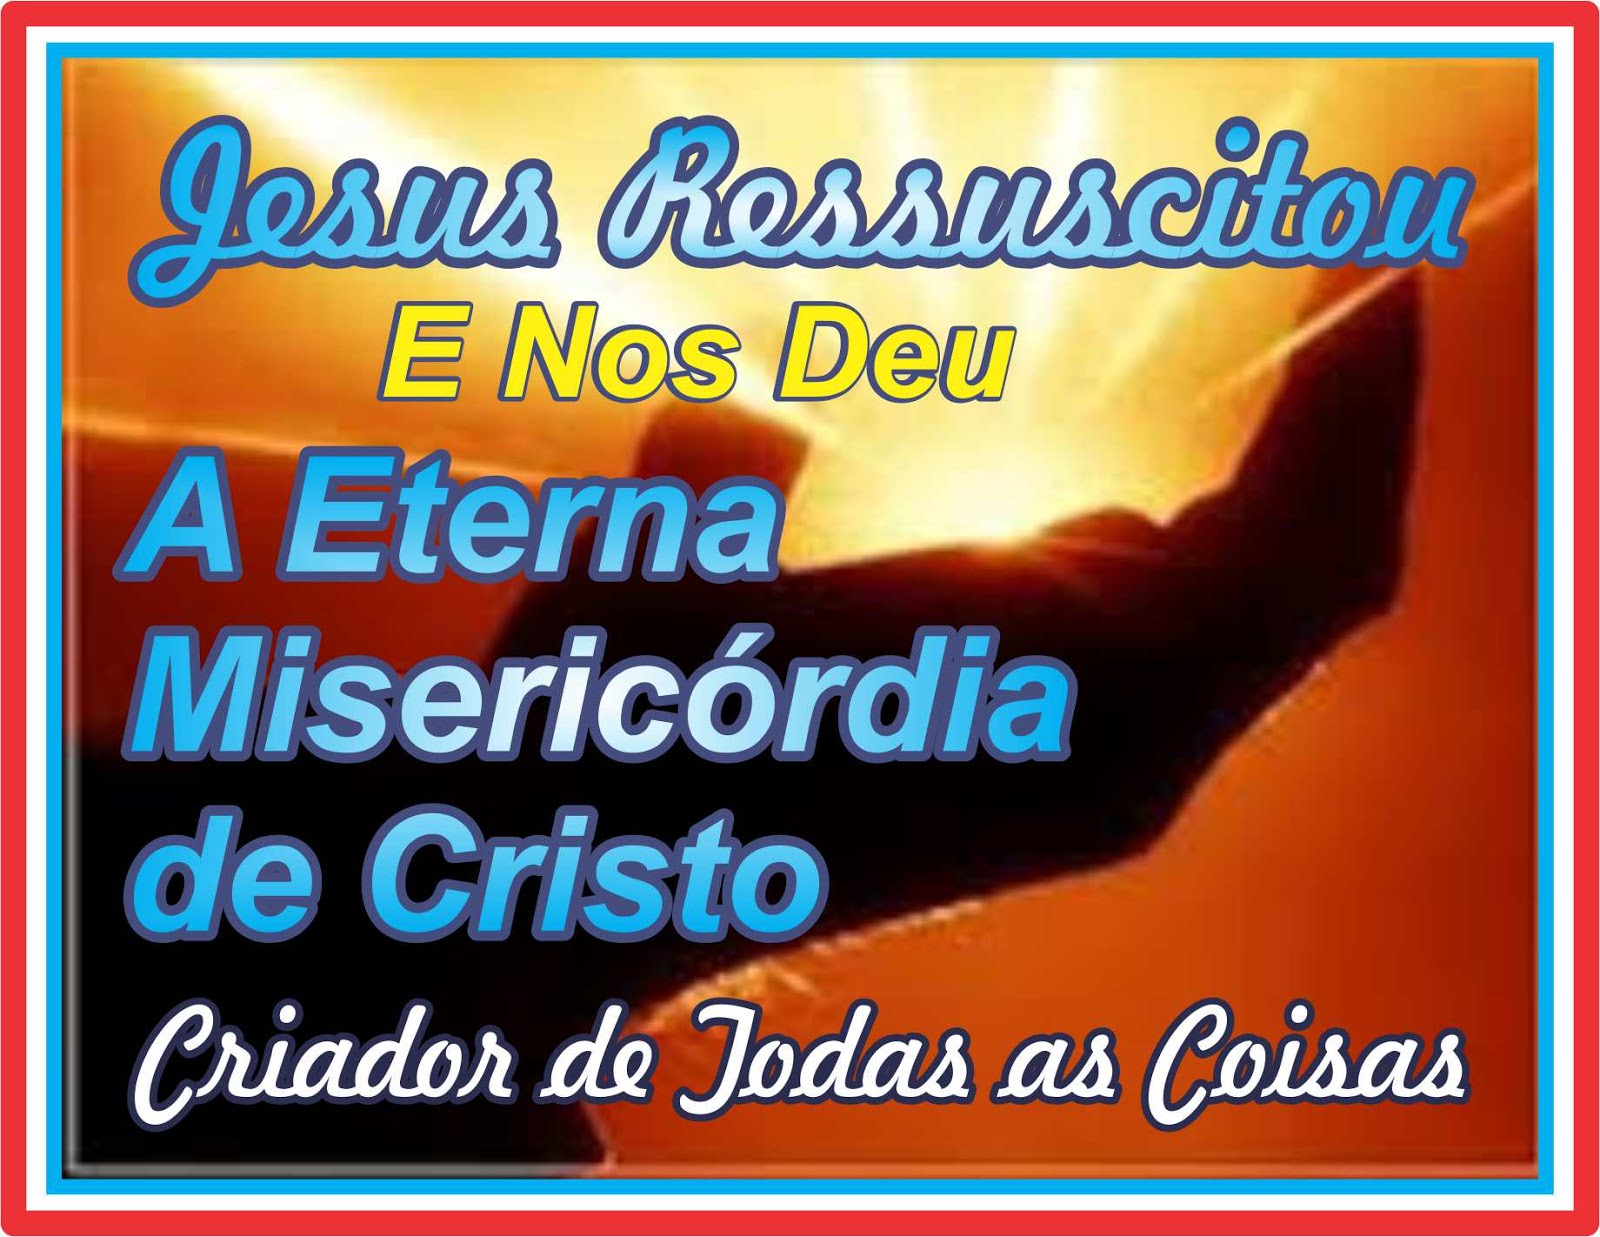 A Eterna Misericórdia de Jesus Cristo